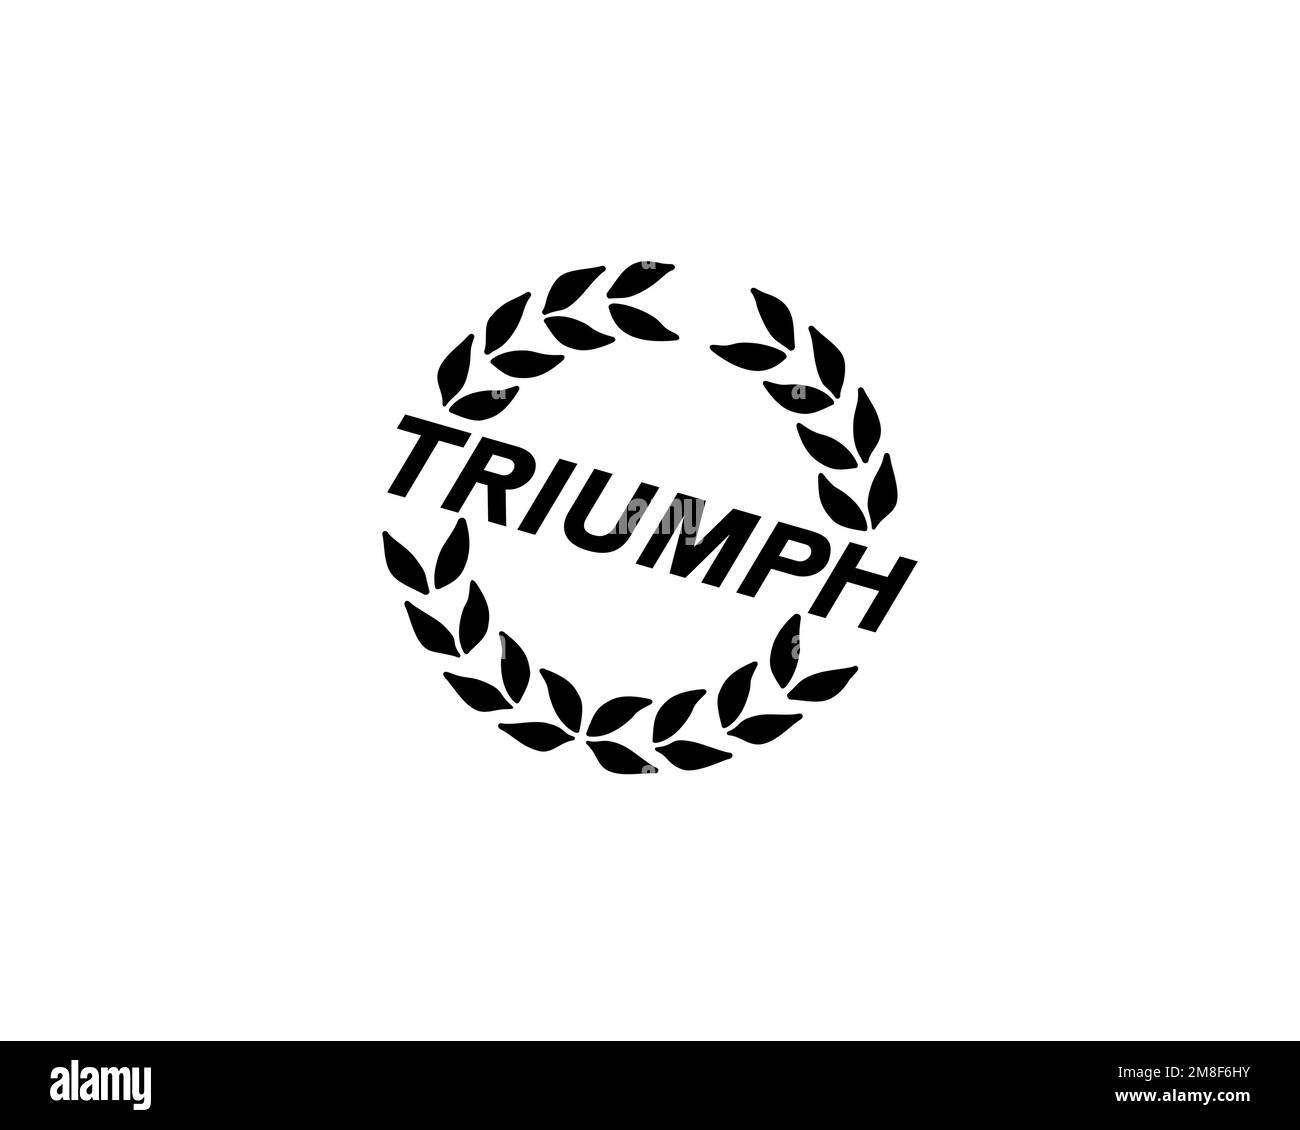 Triumph Motor Company, gedrehtes Logo, weißer Hintergrund B Stockfoto